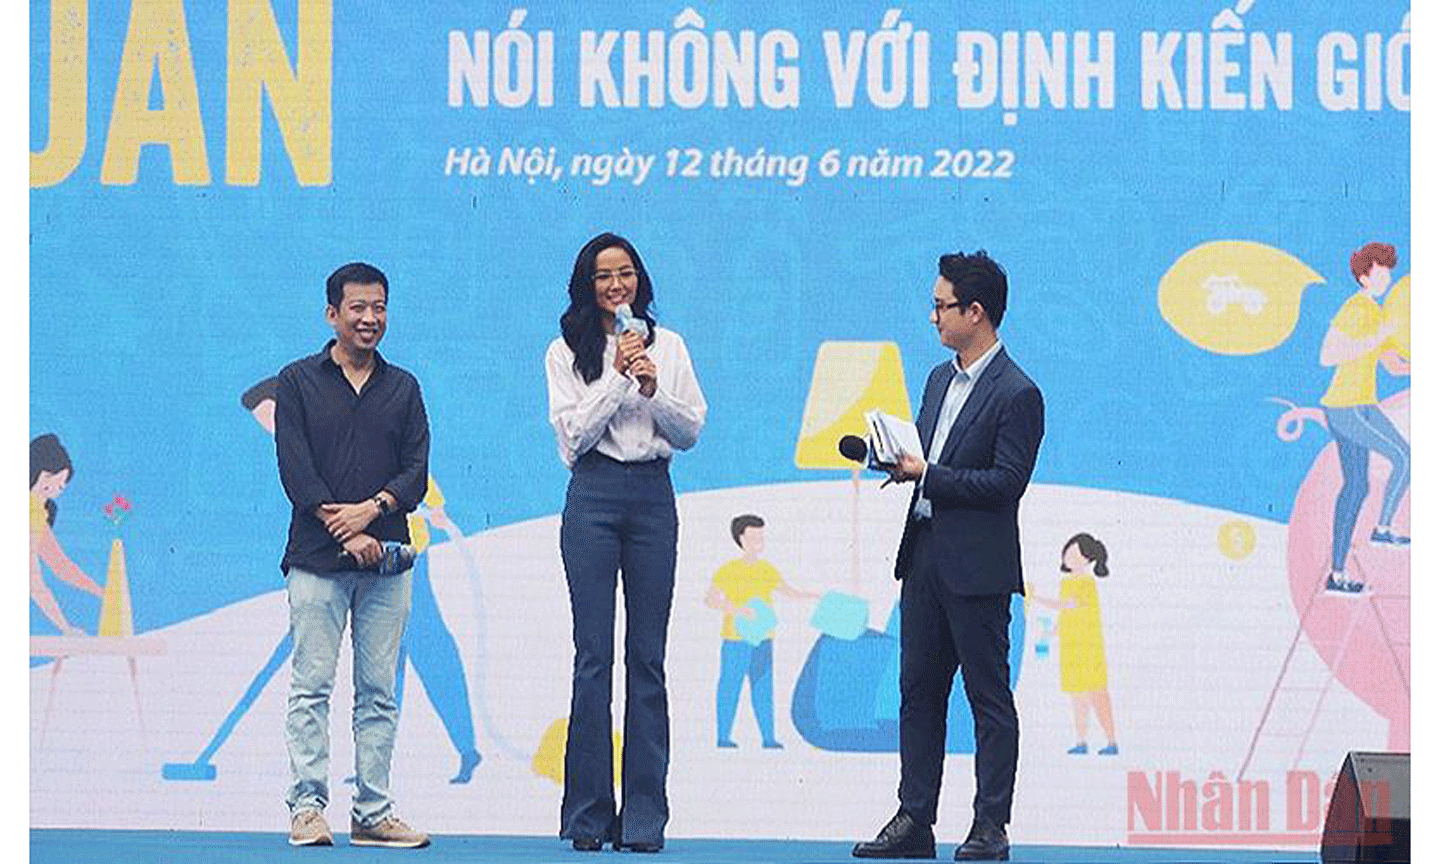 Từ trái qua: Nhà văn, nhà báo Hoàng Anh Tú và Hoa hậu H’hen Niê chia sẻ ý kiến về bình đẳng giới tại buổi lễ.